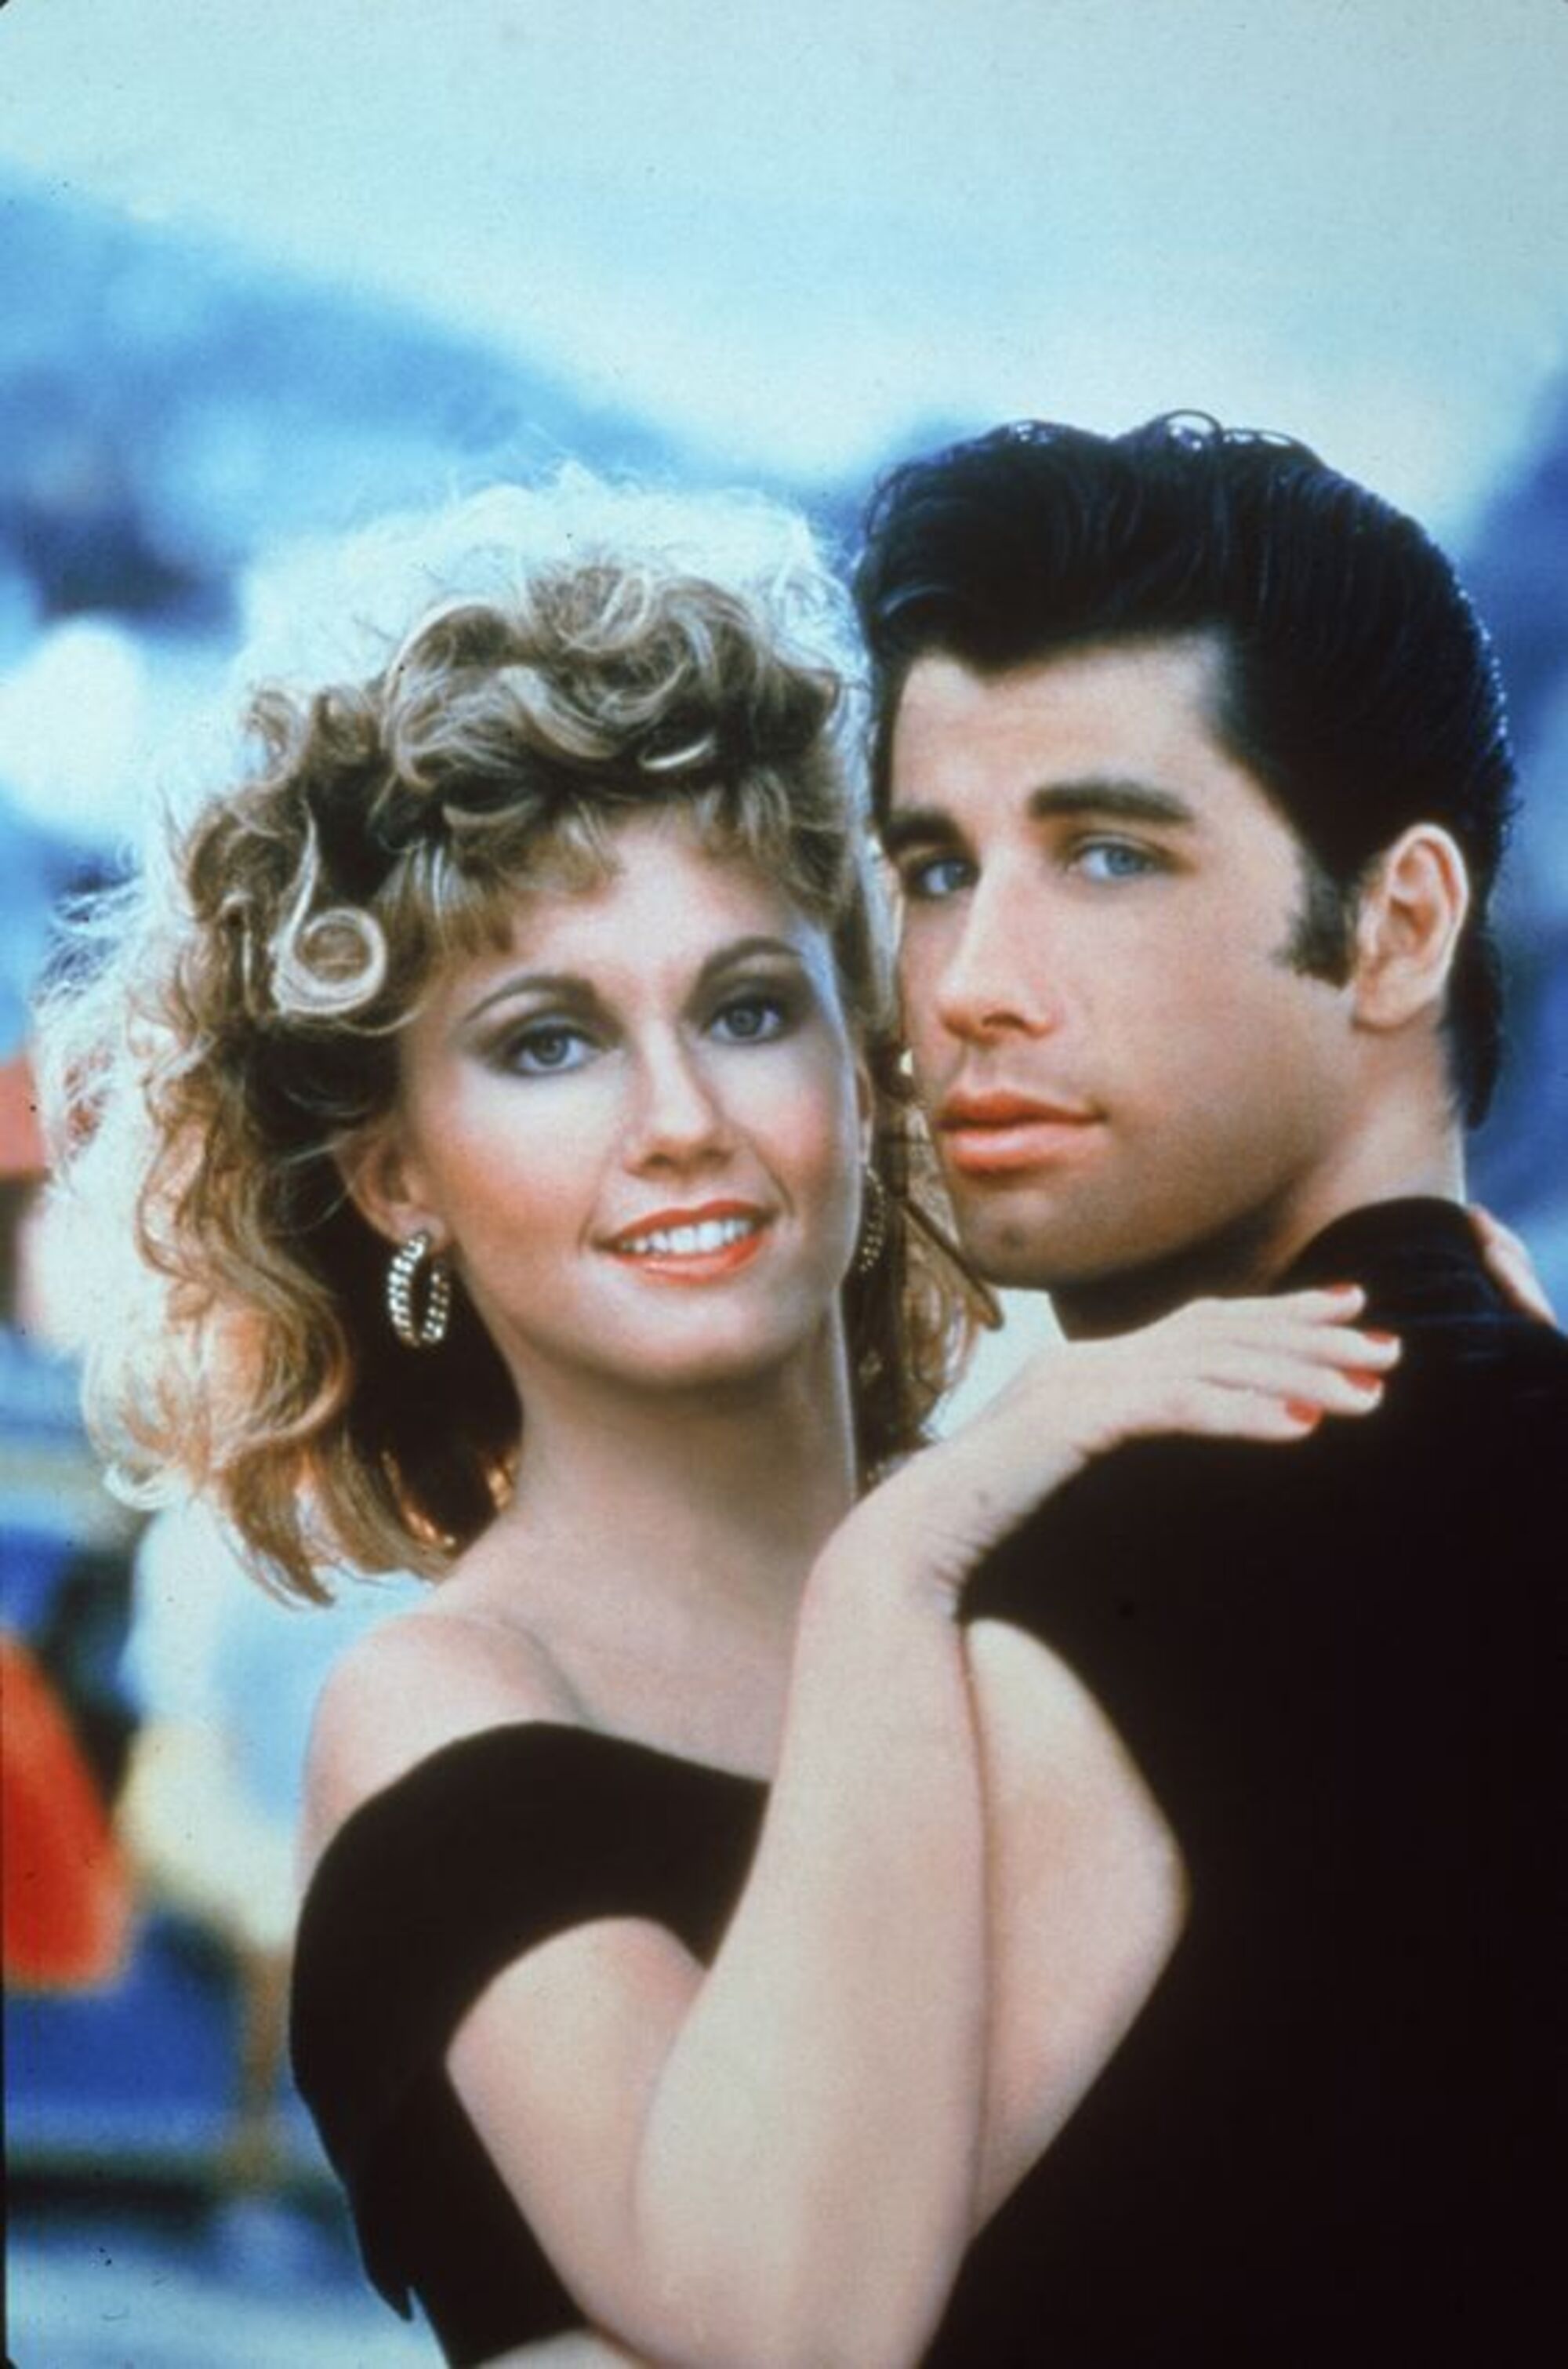 L'emotiu adeu de John Travolta a Olivia Newton-John: "El teu John, el teu Danny"